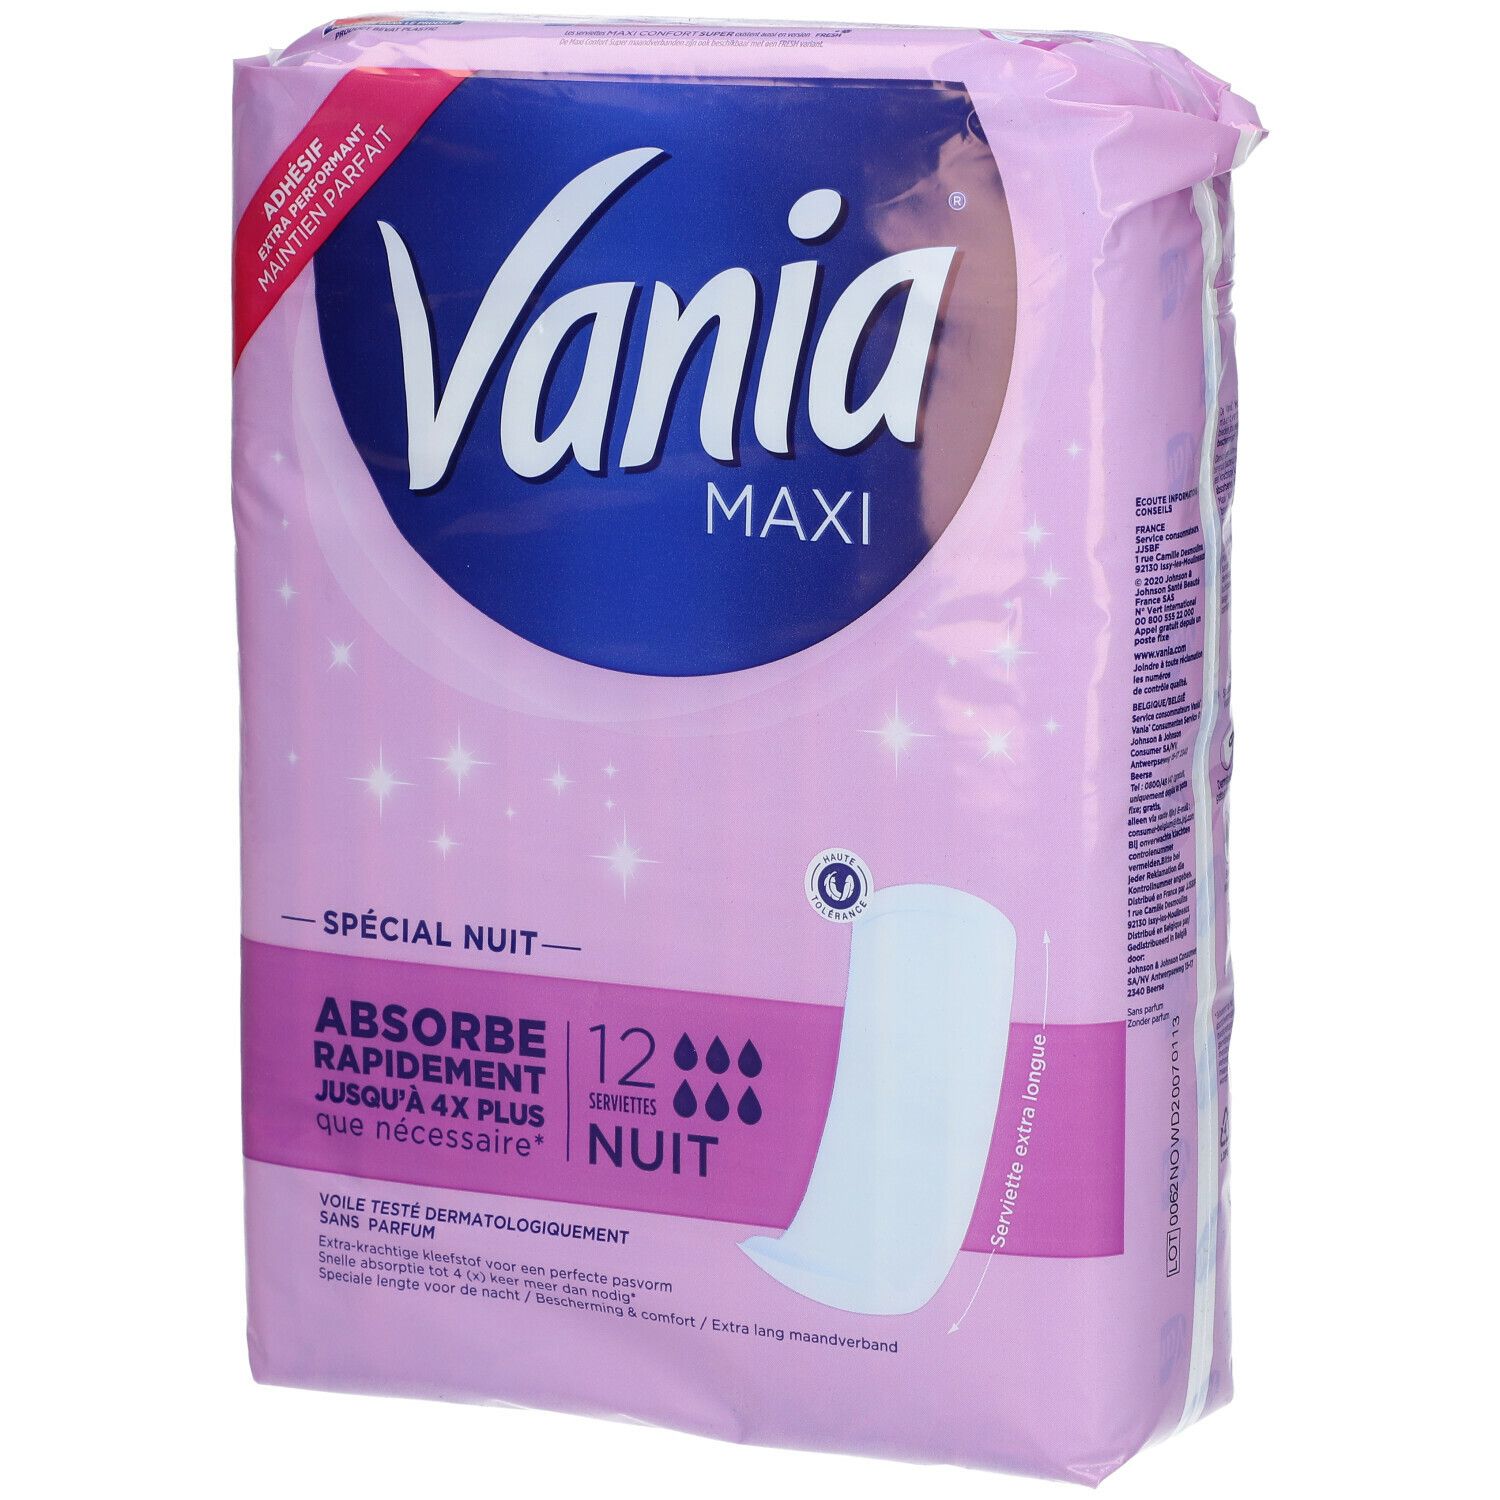 Vania® Maxi Serviettes Hygiéniques Nuit